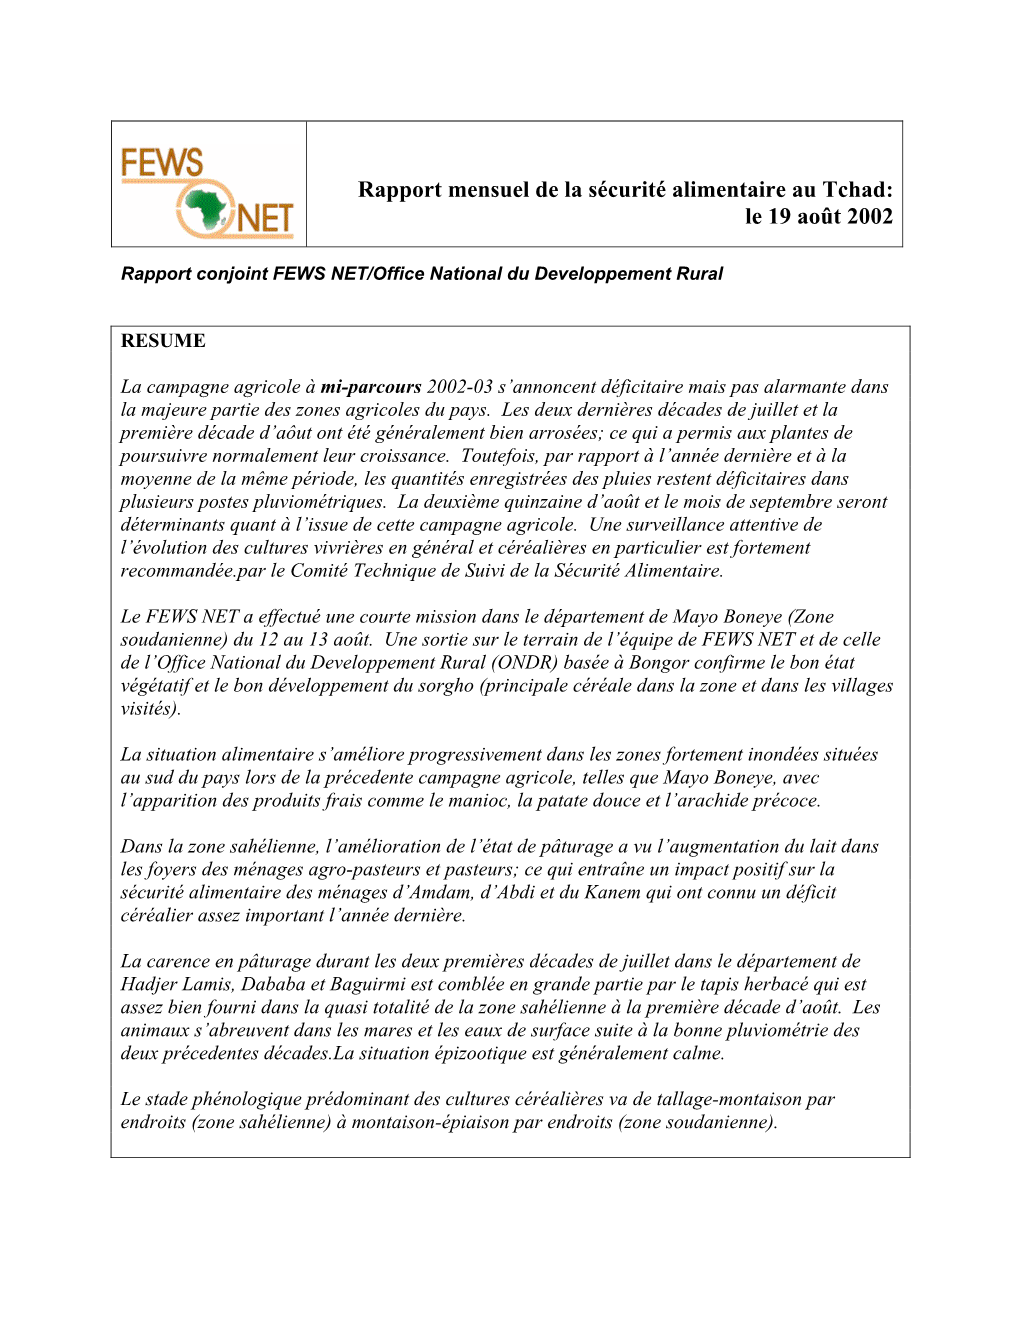 Rapport Mensuel De La Sécurité Alimentaire Au Tchad: Le 19 Août 2002